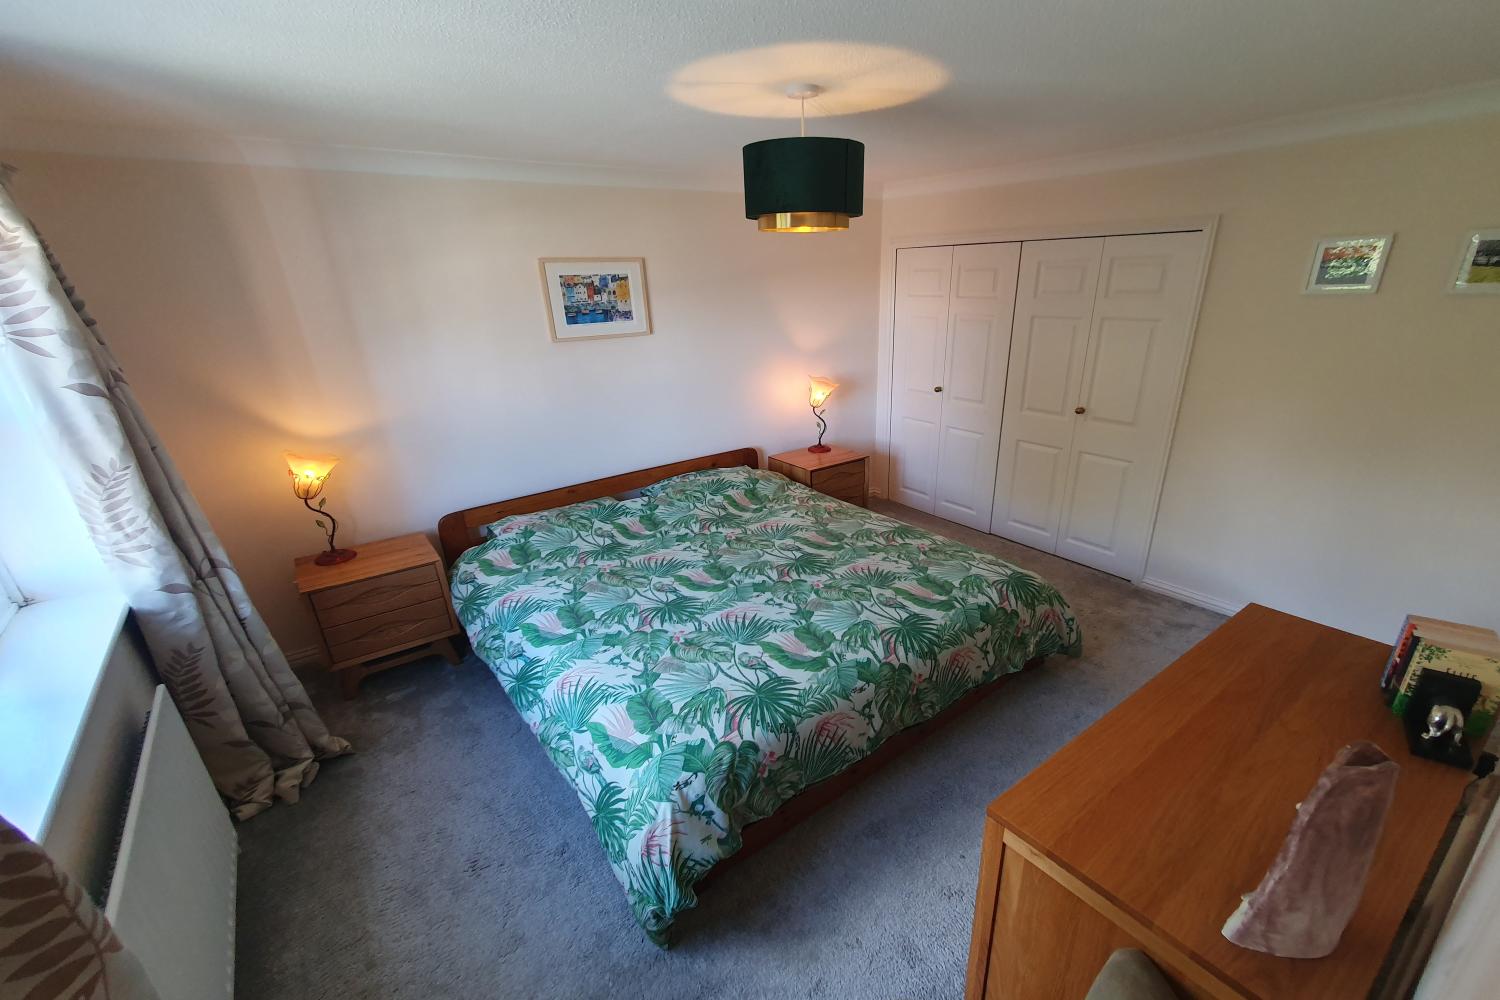 Bedroom with En-Suite